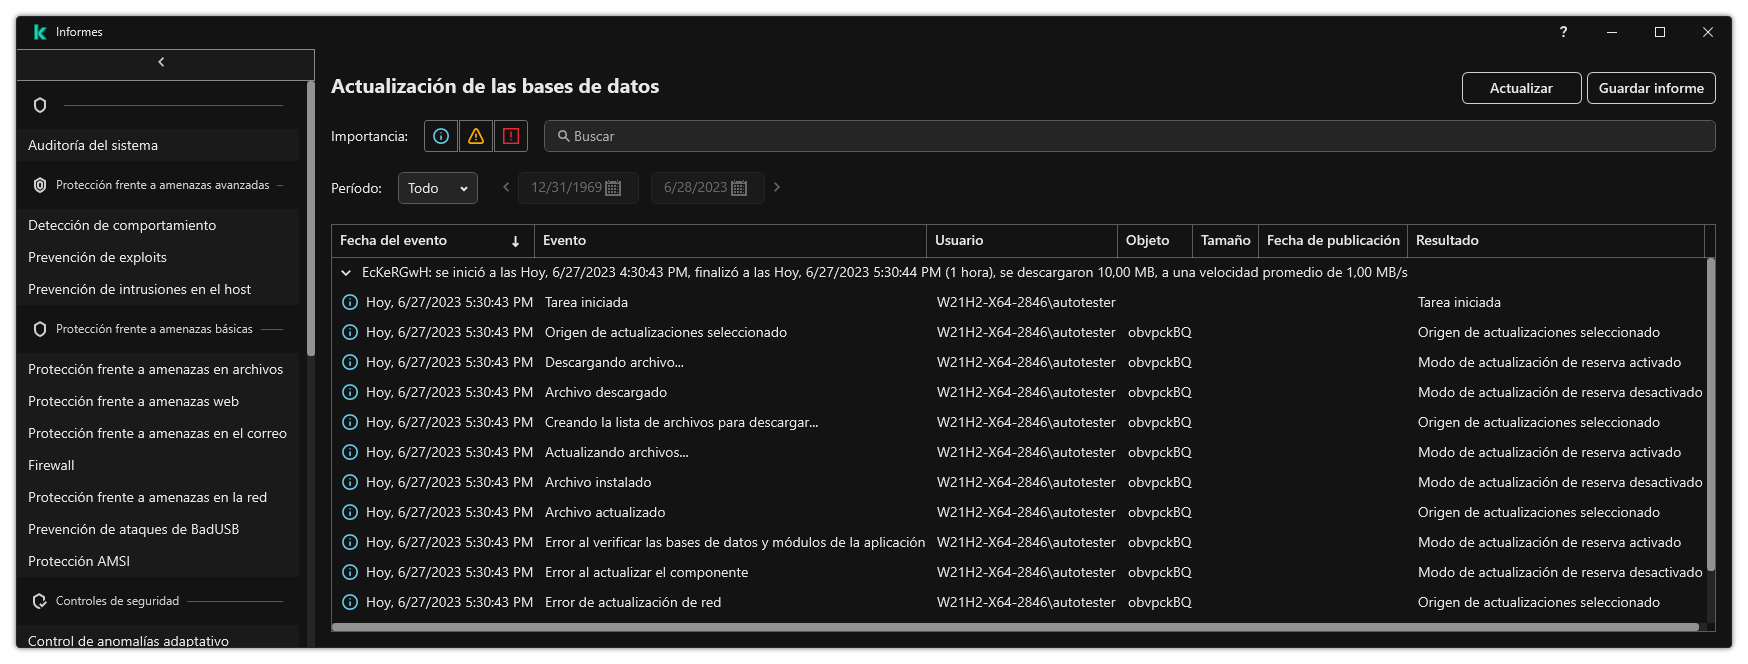 Una ventana con la lista de eventos del informe. El usuario puede filtrar/ordenar eventos y guardar informes en un archivo.